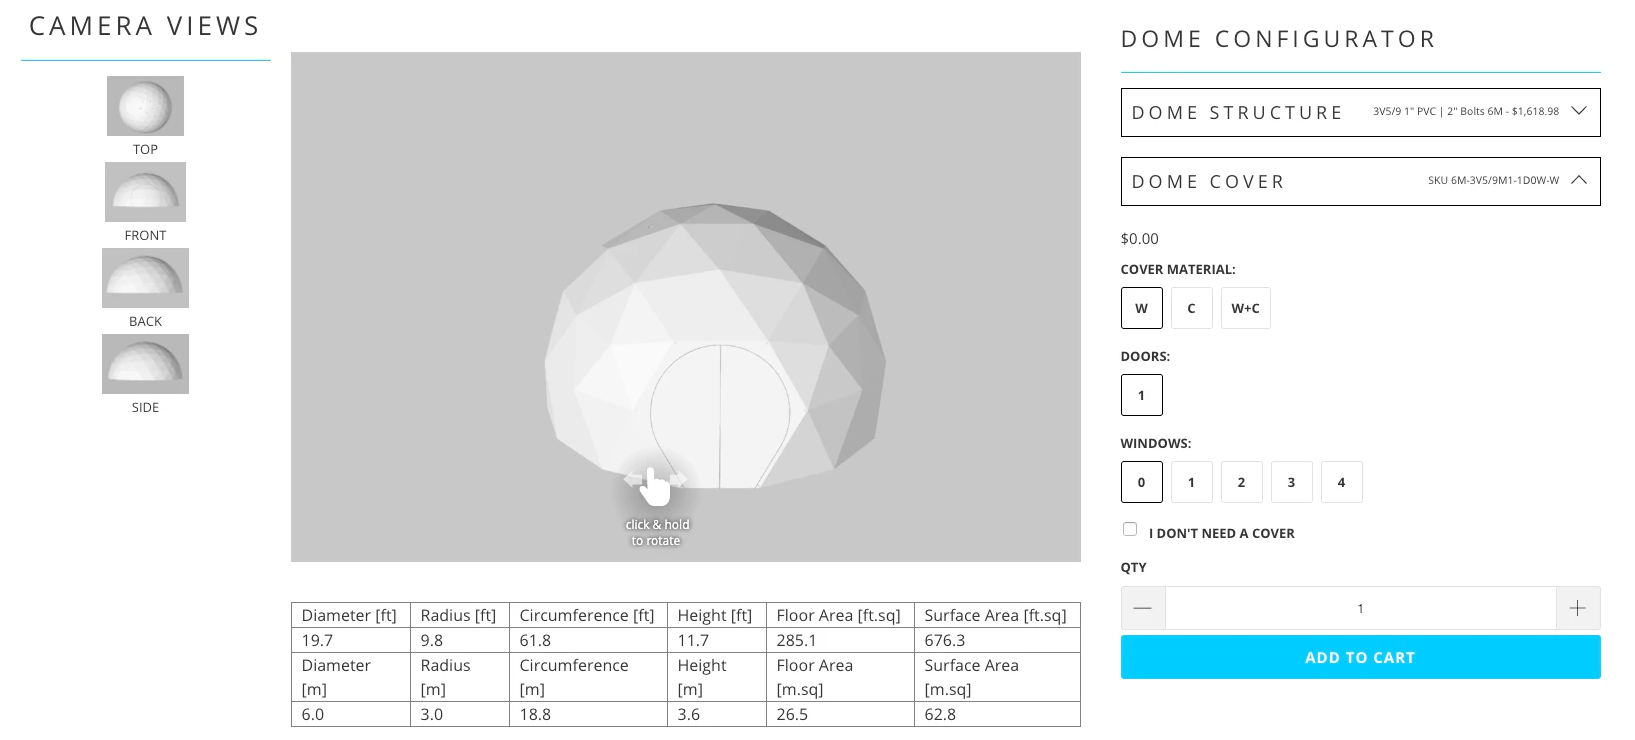 Sonostar's NEW 3D Dome Configurator